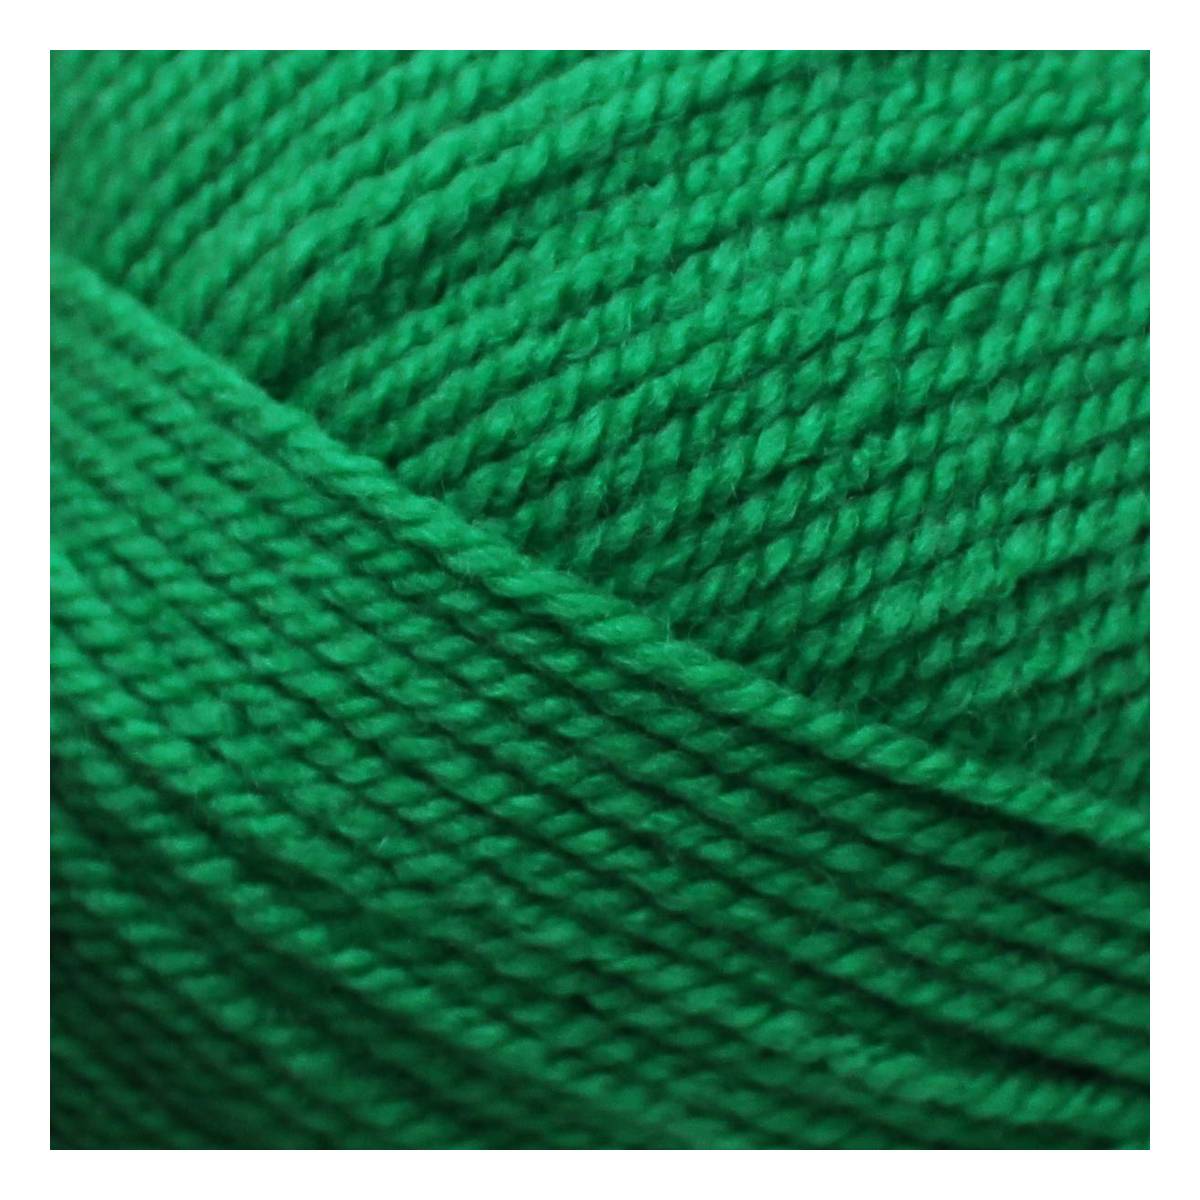 Women’s Institute Green Premium Acrylic Yarn 100g